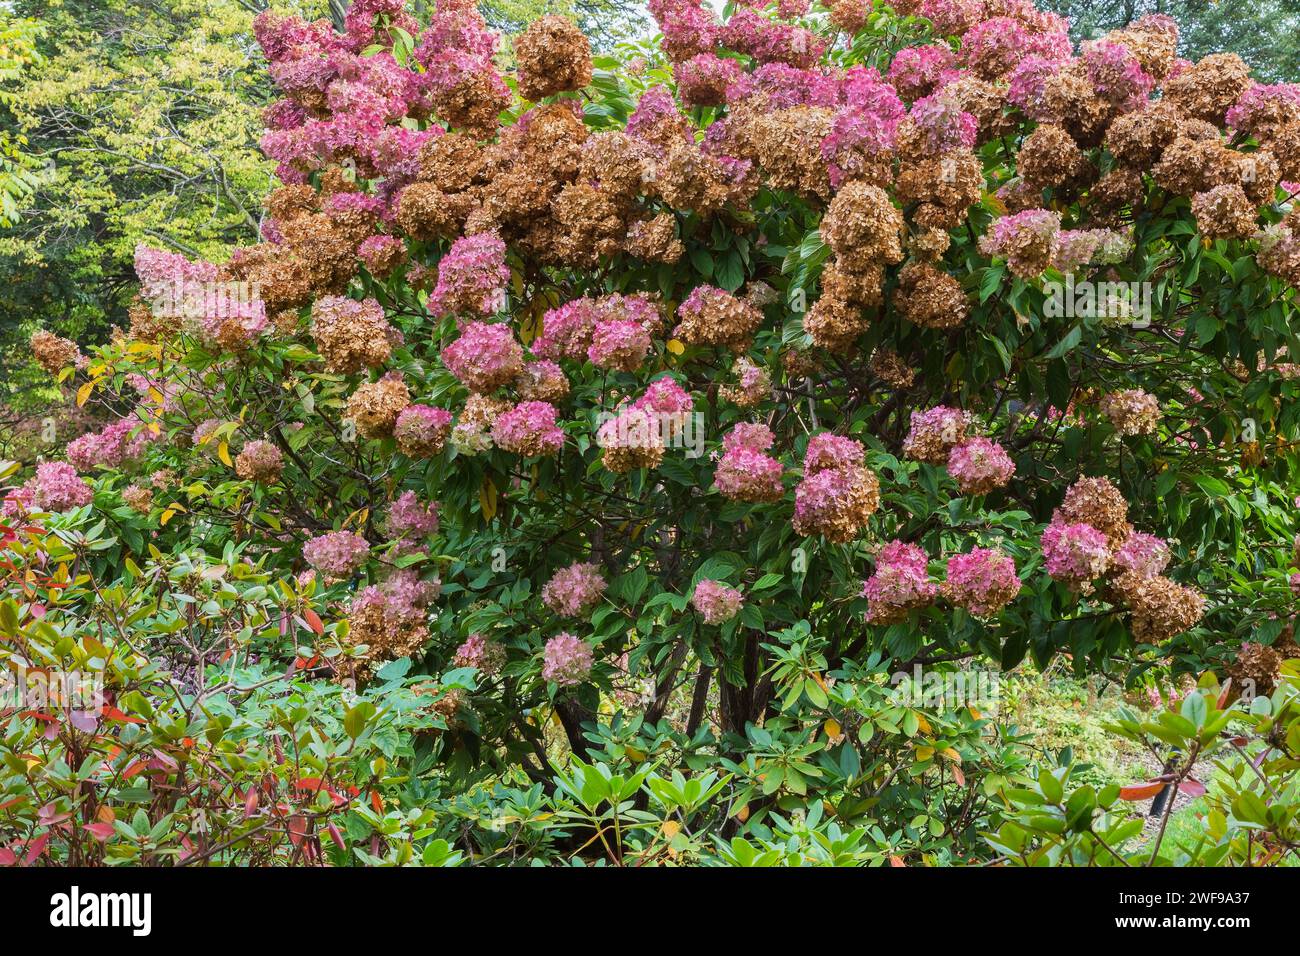 Hortensie paniculata 'Grandiflora' - PeeGee Hortensie mit rosa und welkigen Blütenköpfen im Herbst. Stockfoto